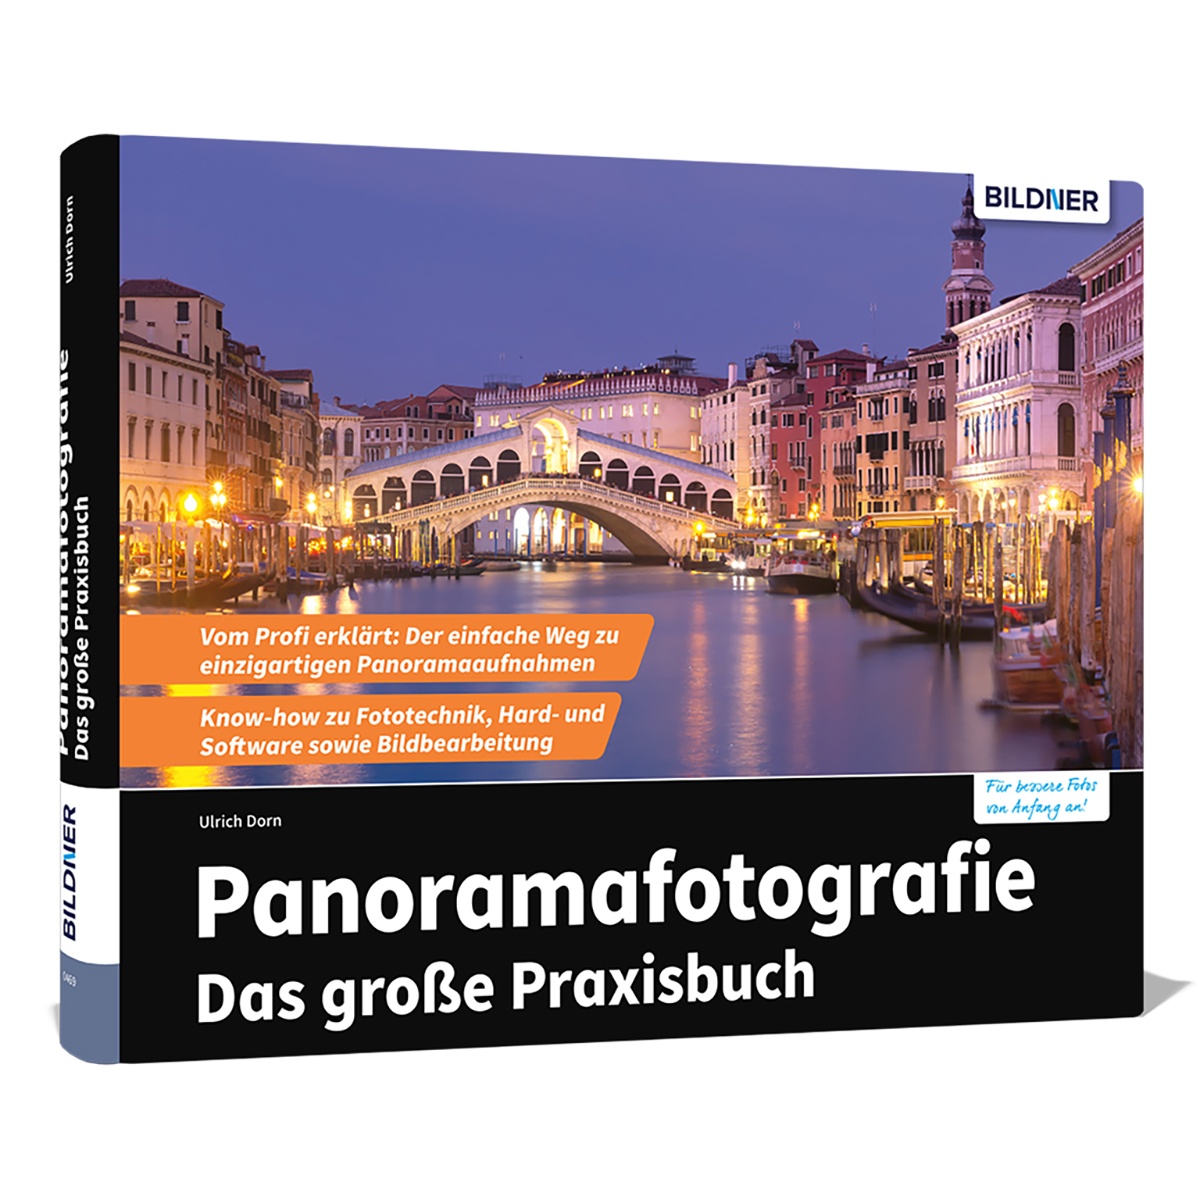 Das Panoramafotografie - große Praxisbuch